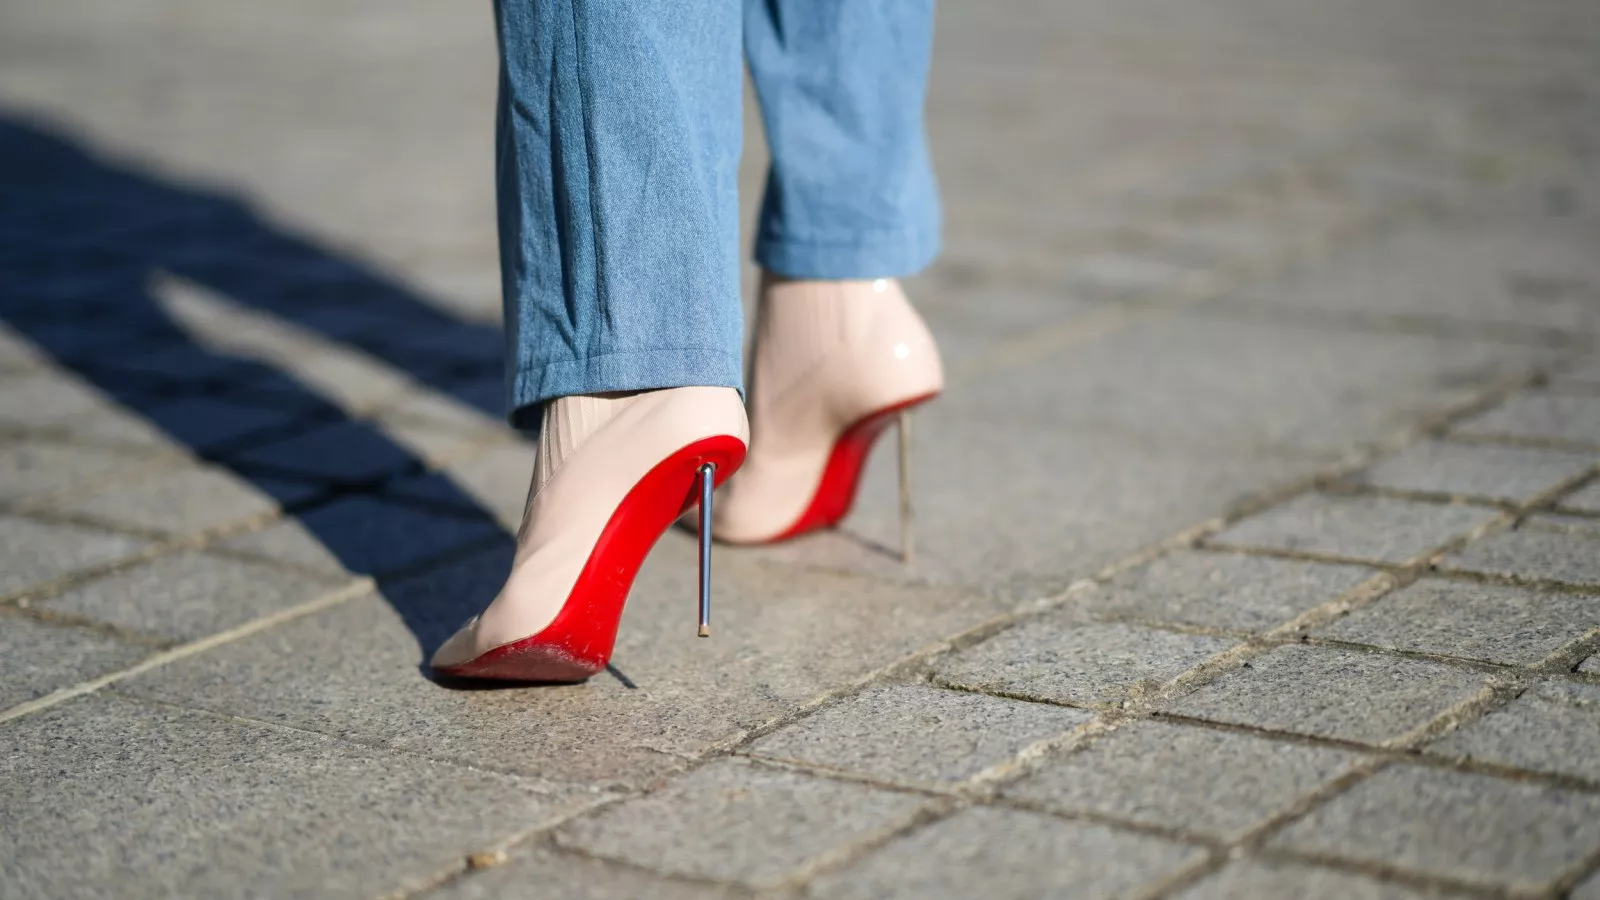 Women's Christian Louboutin Heels